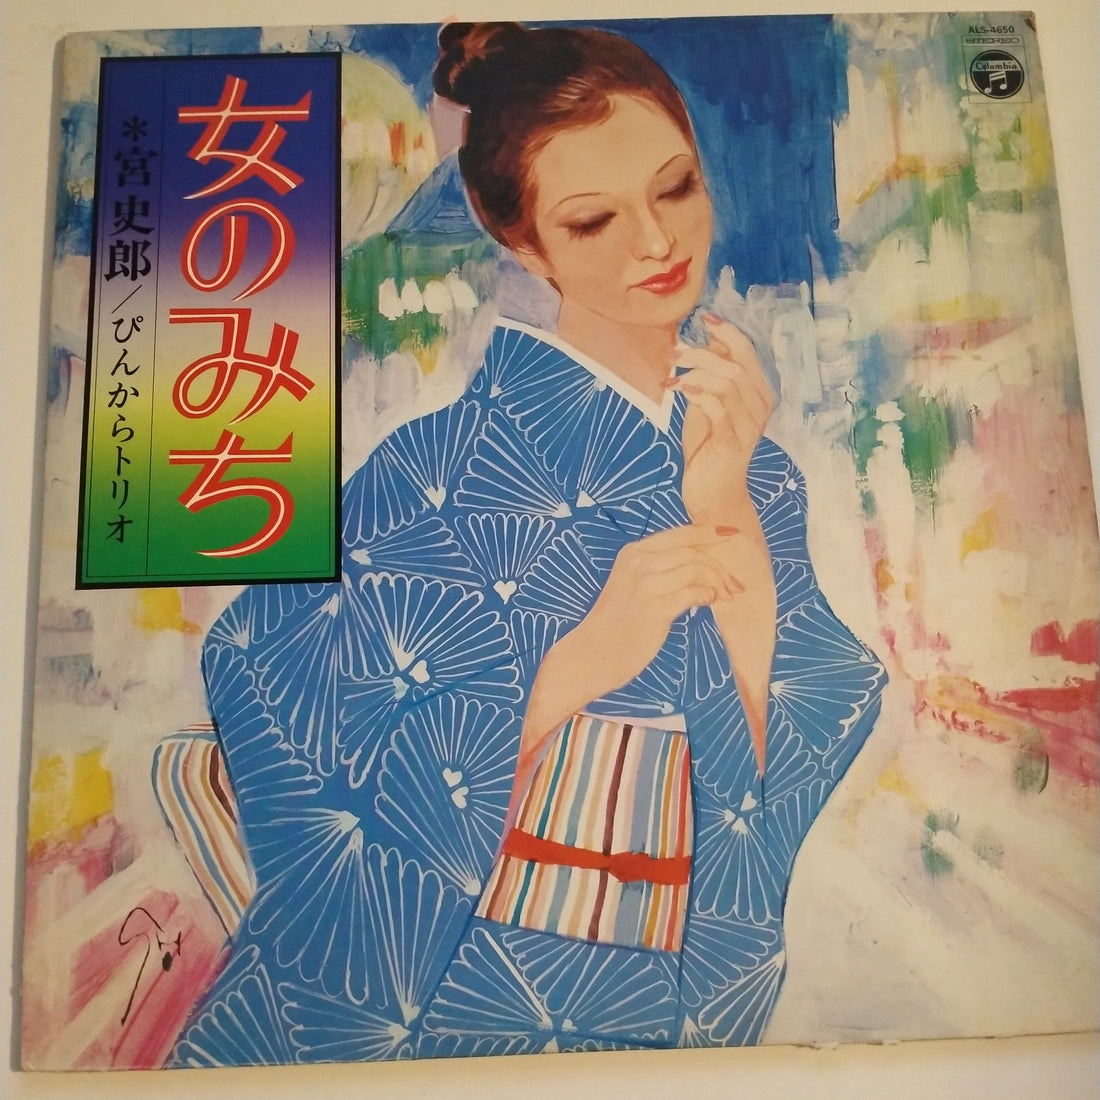 Shiro Miya, ぴんからトリオ - 女のみち (Vinyl) (VG+)